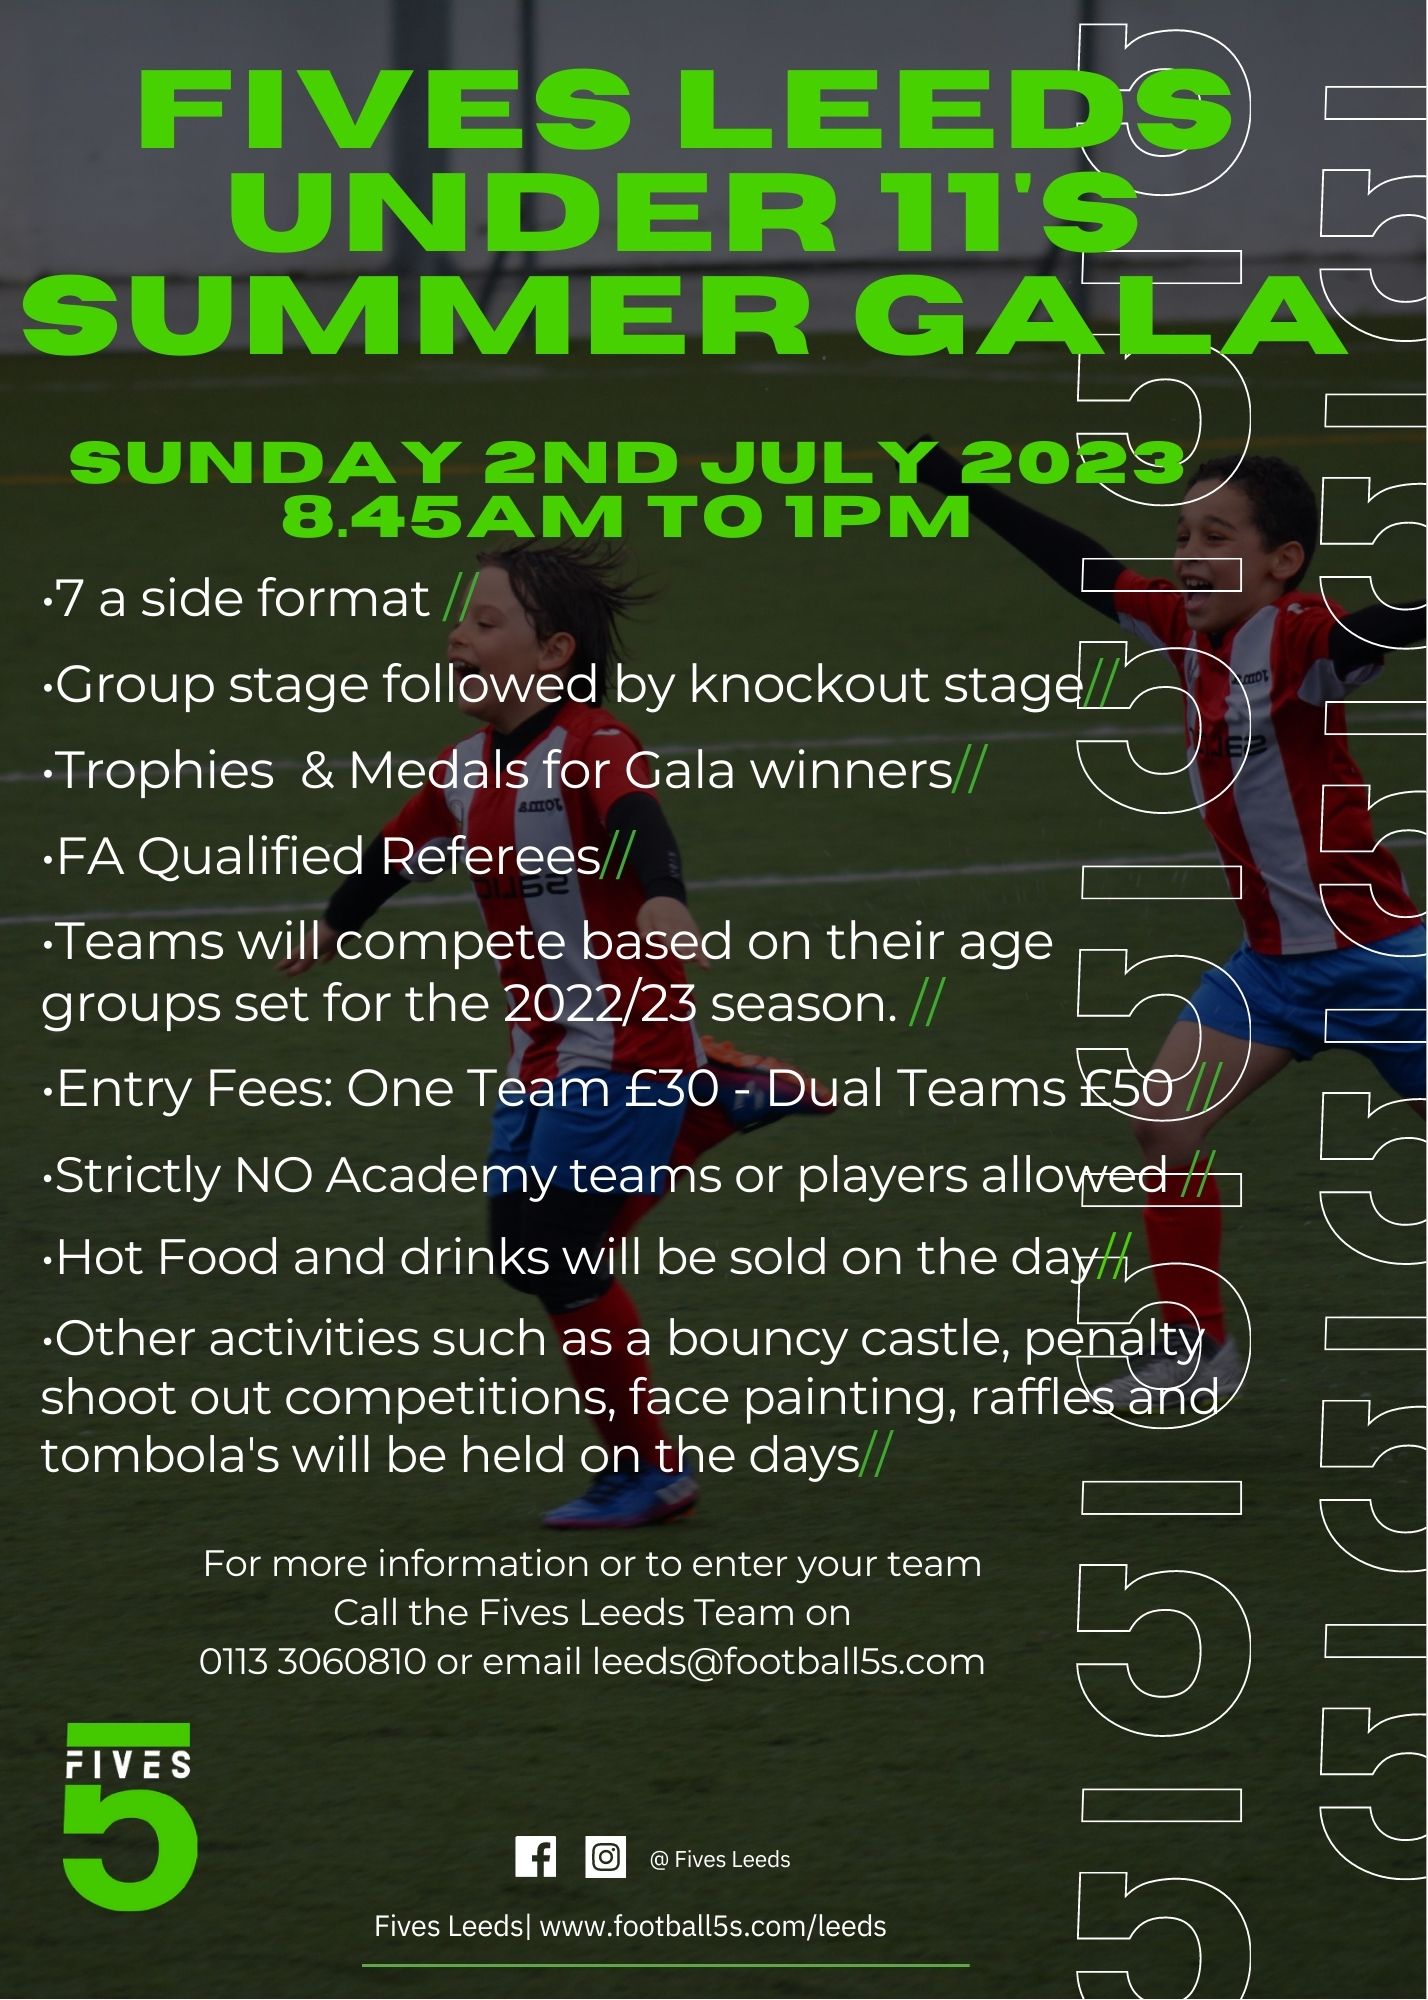 Fives Leeds Under 11’s Summer Gala 2023